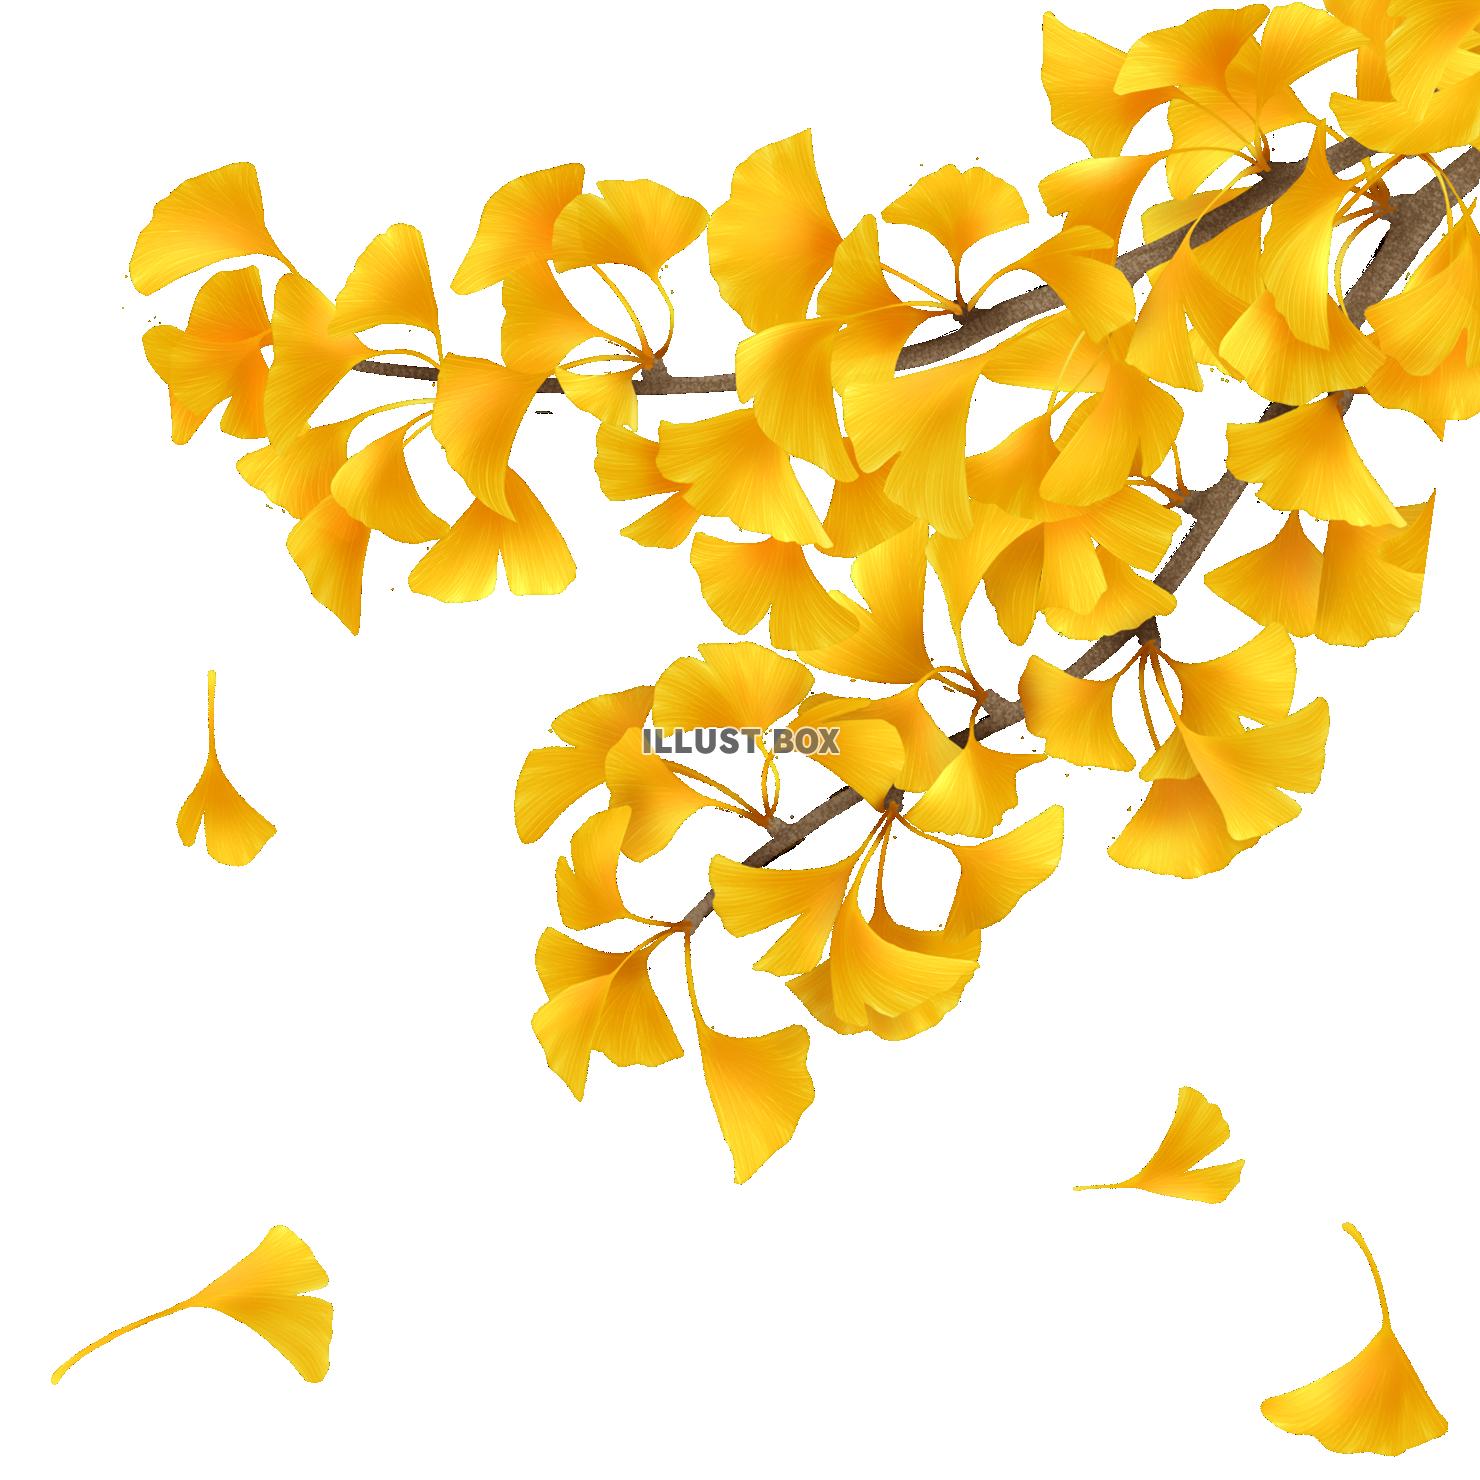 銀杏の枝と舞い落ちる葉④